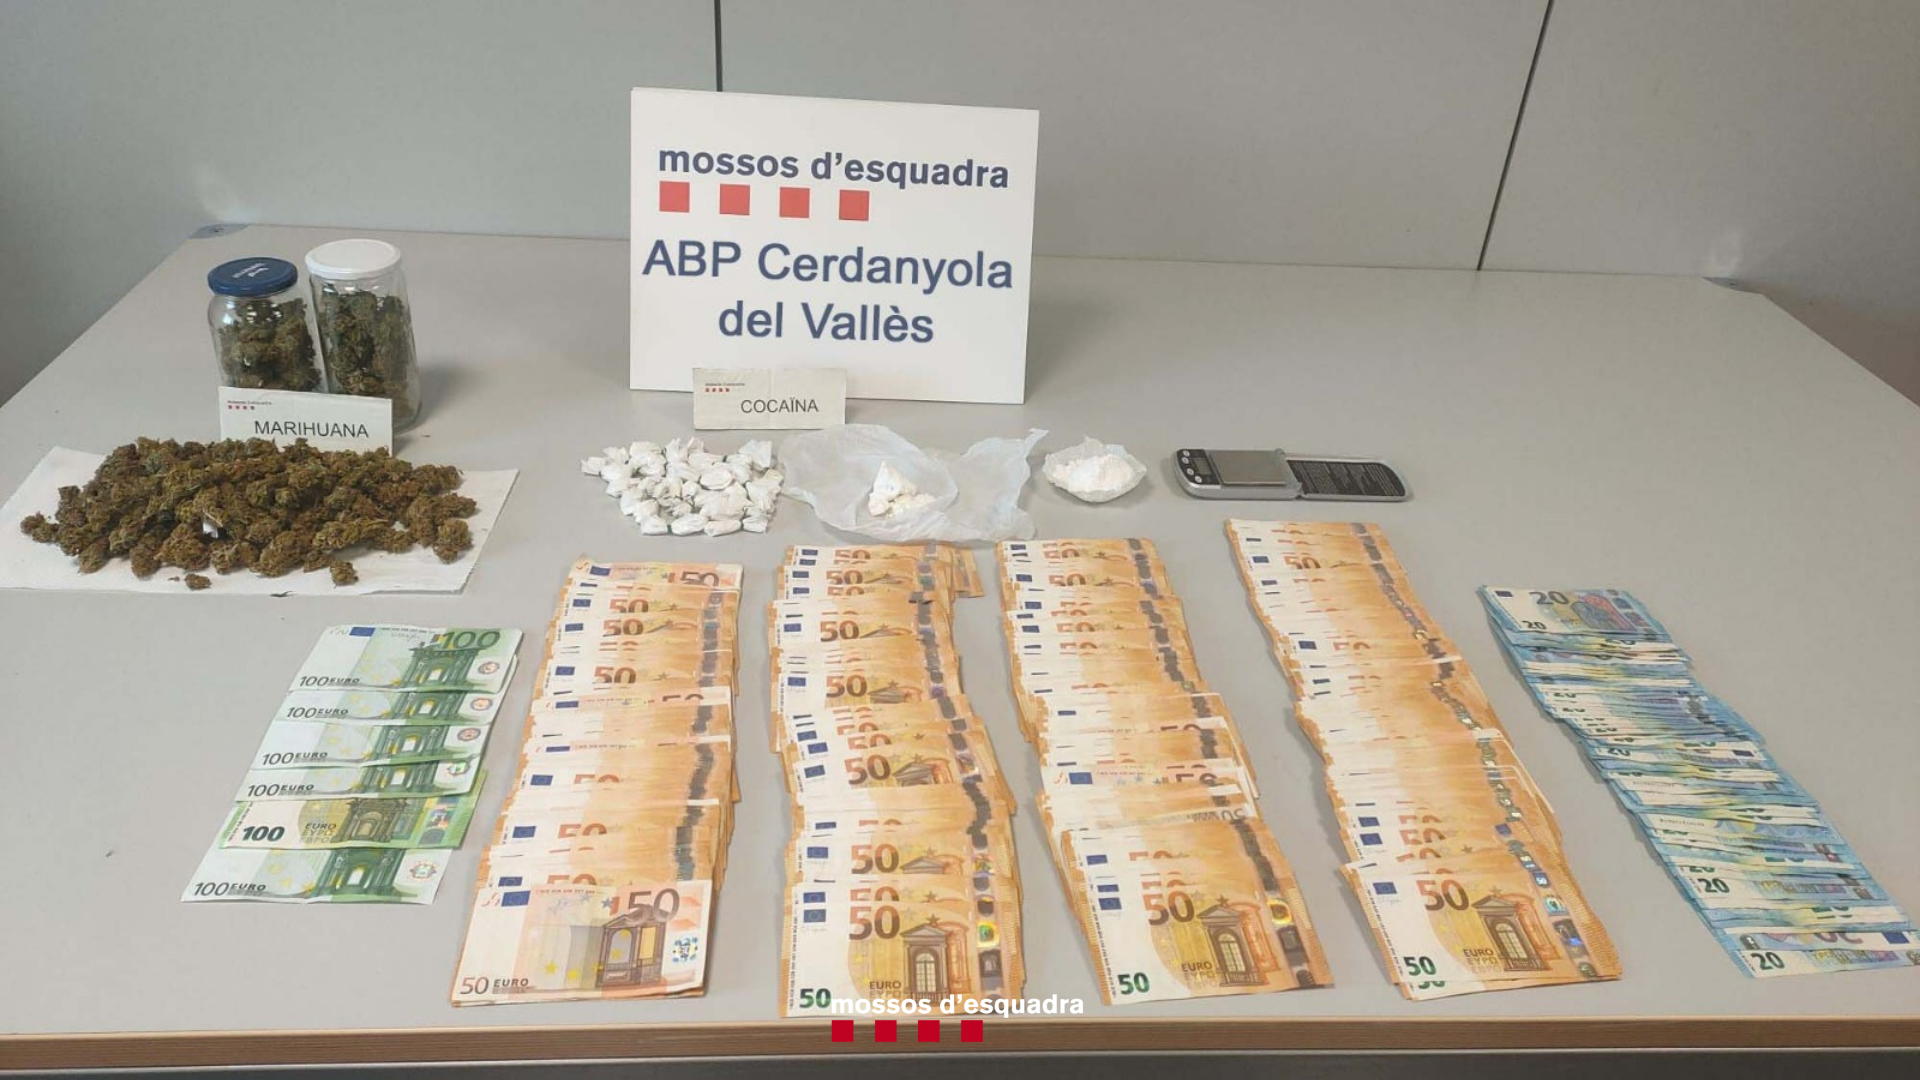 Els Mossos d'Esquadra també van trobar diners en efectiu i cocaïna. FOTO: Mossos d'Esquadra